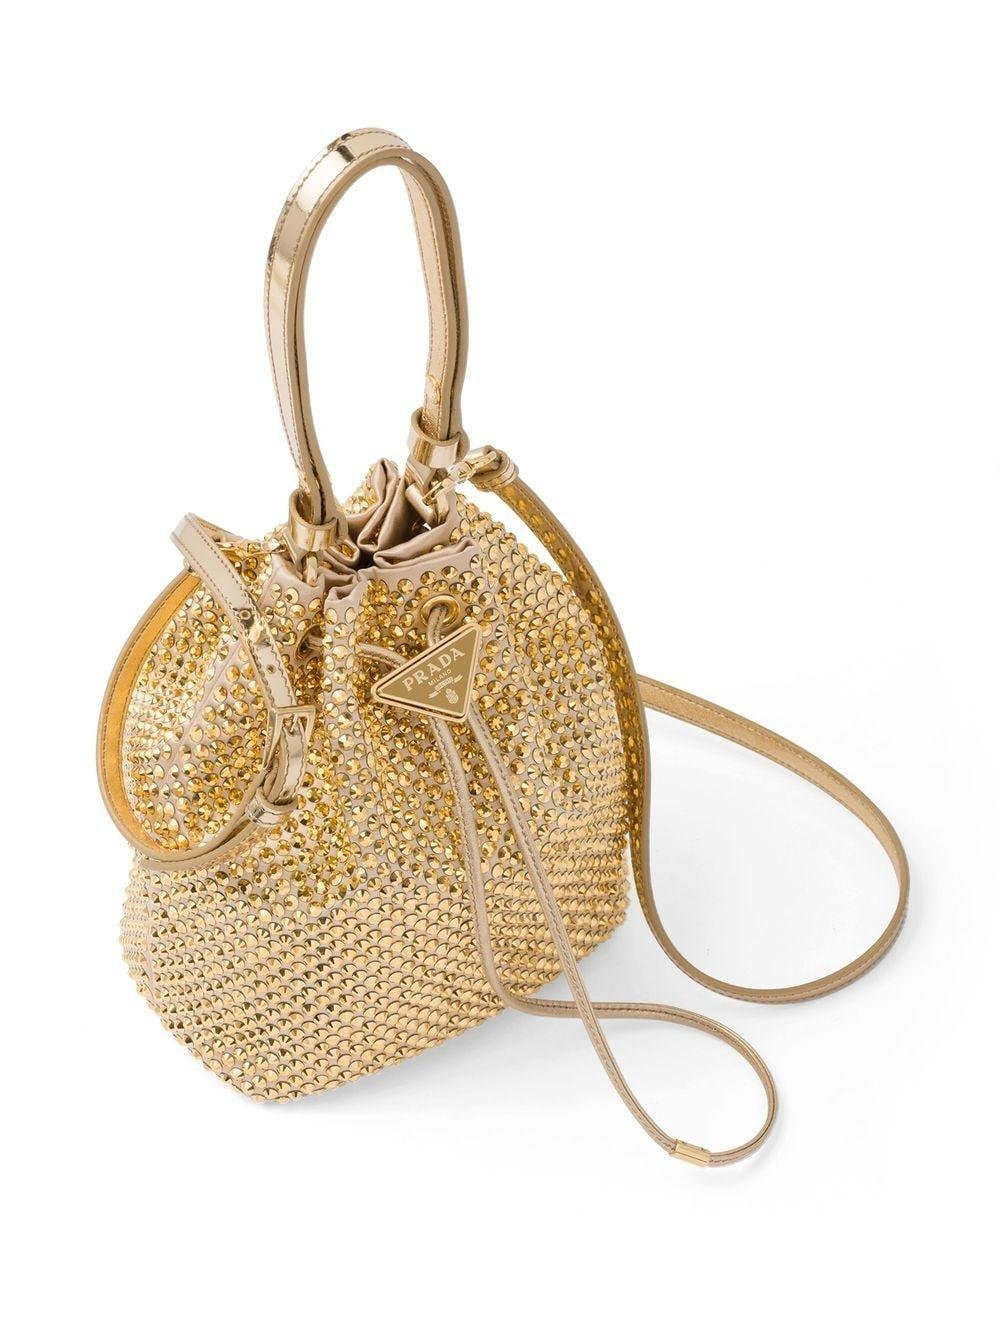 Prada Gold Tone Crystal Embellished Bucket Bag in Natural